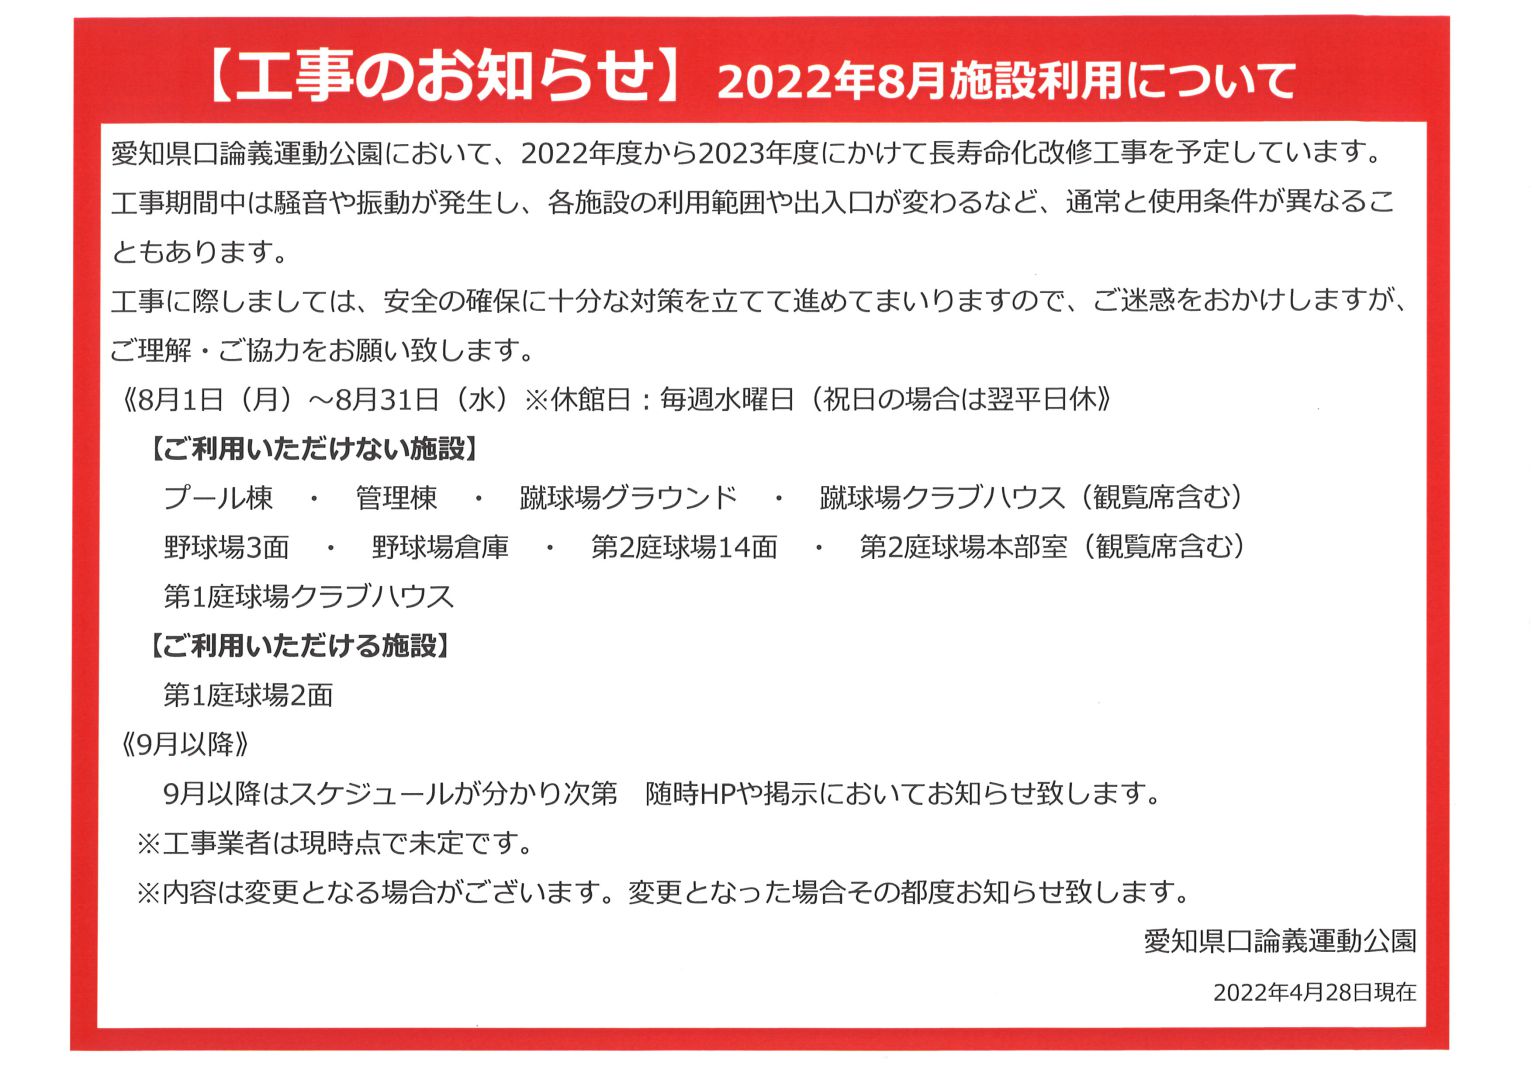 【工事のお知らせ】2022年8月施設利用について